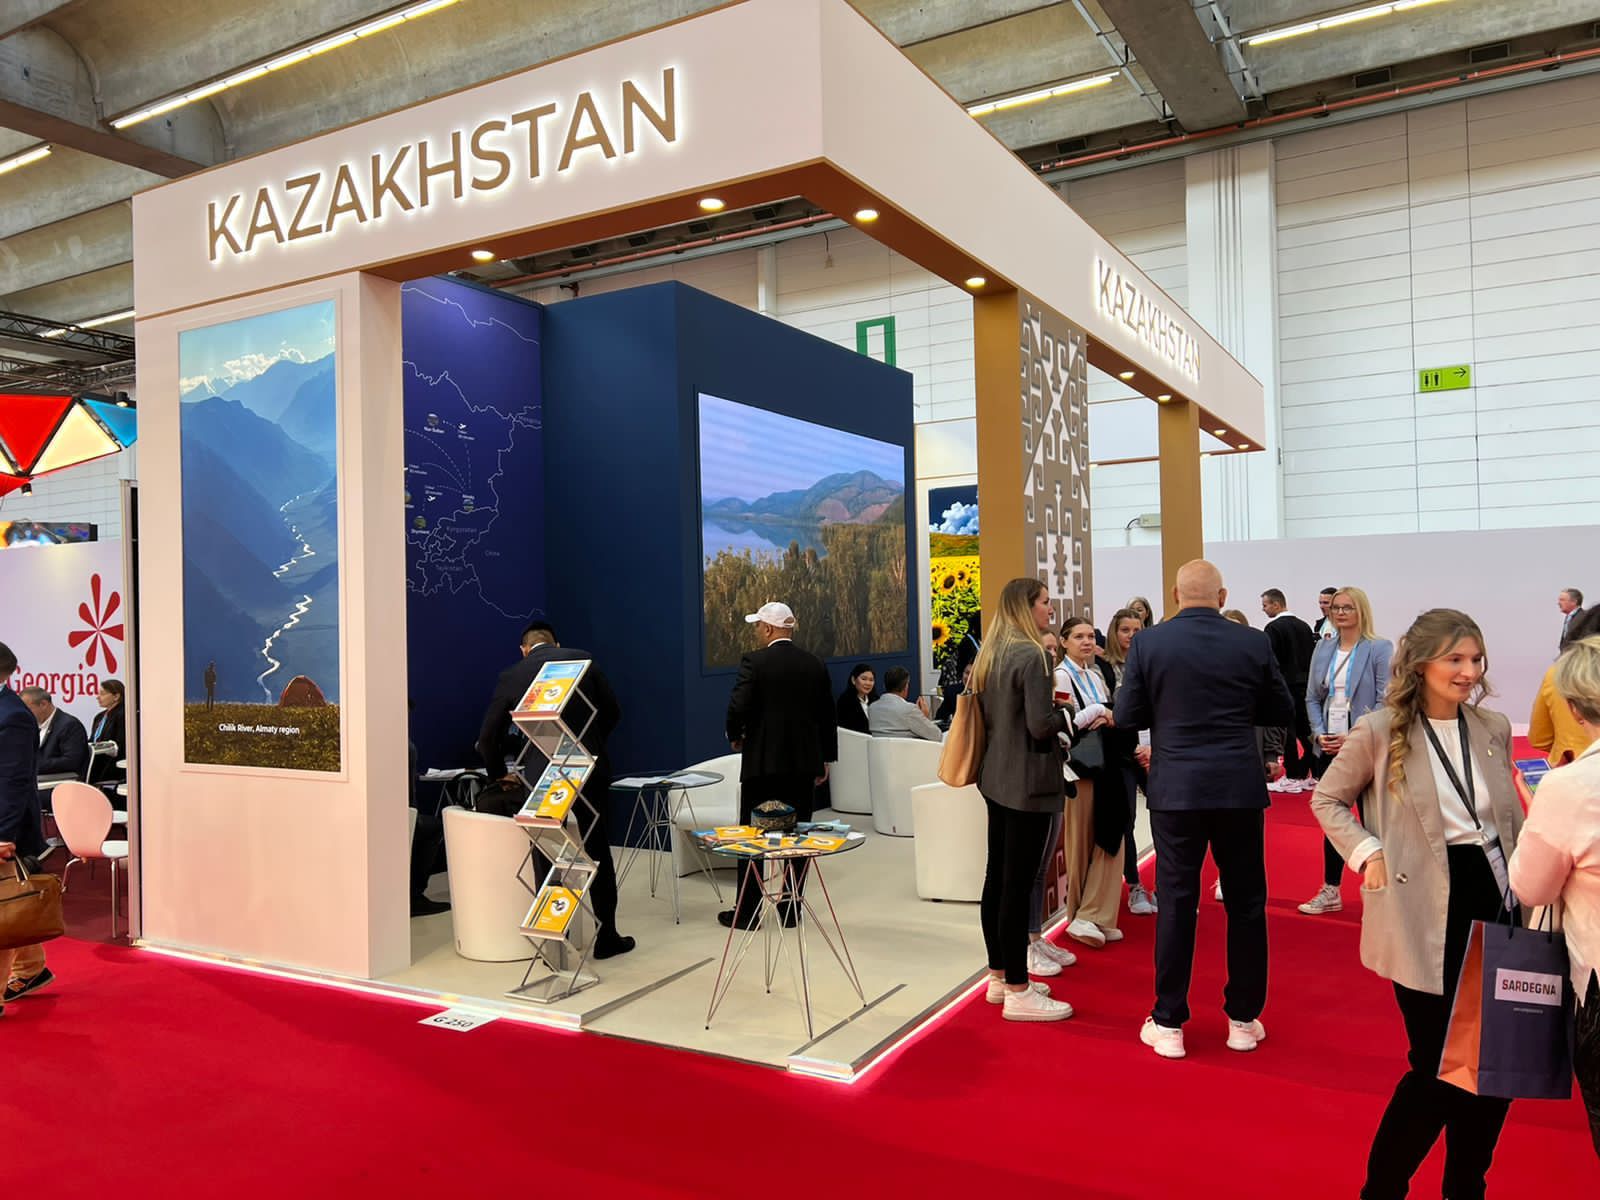 Казахстан был представлен в крупнейшей международной выставке делового туризма IMEX Frankfurt